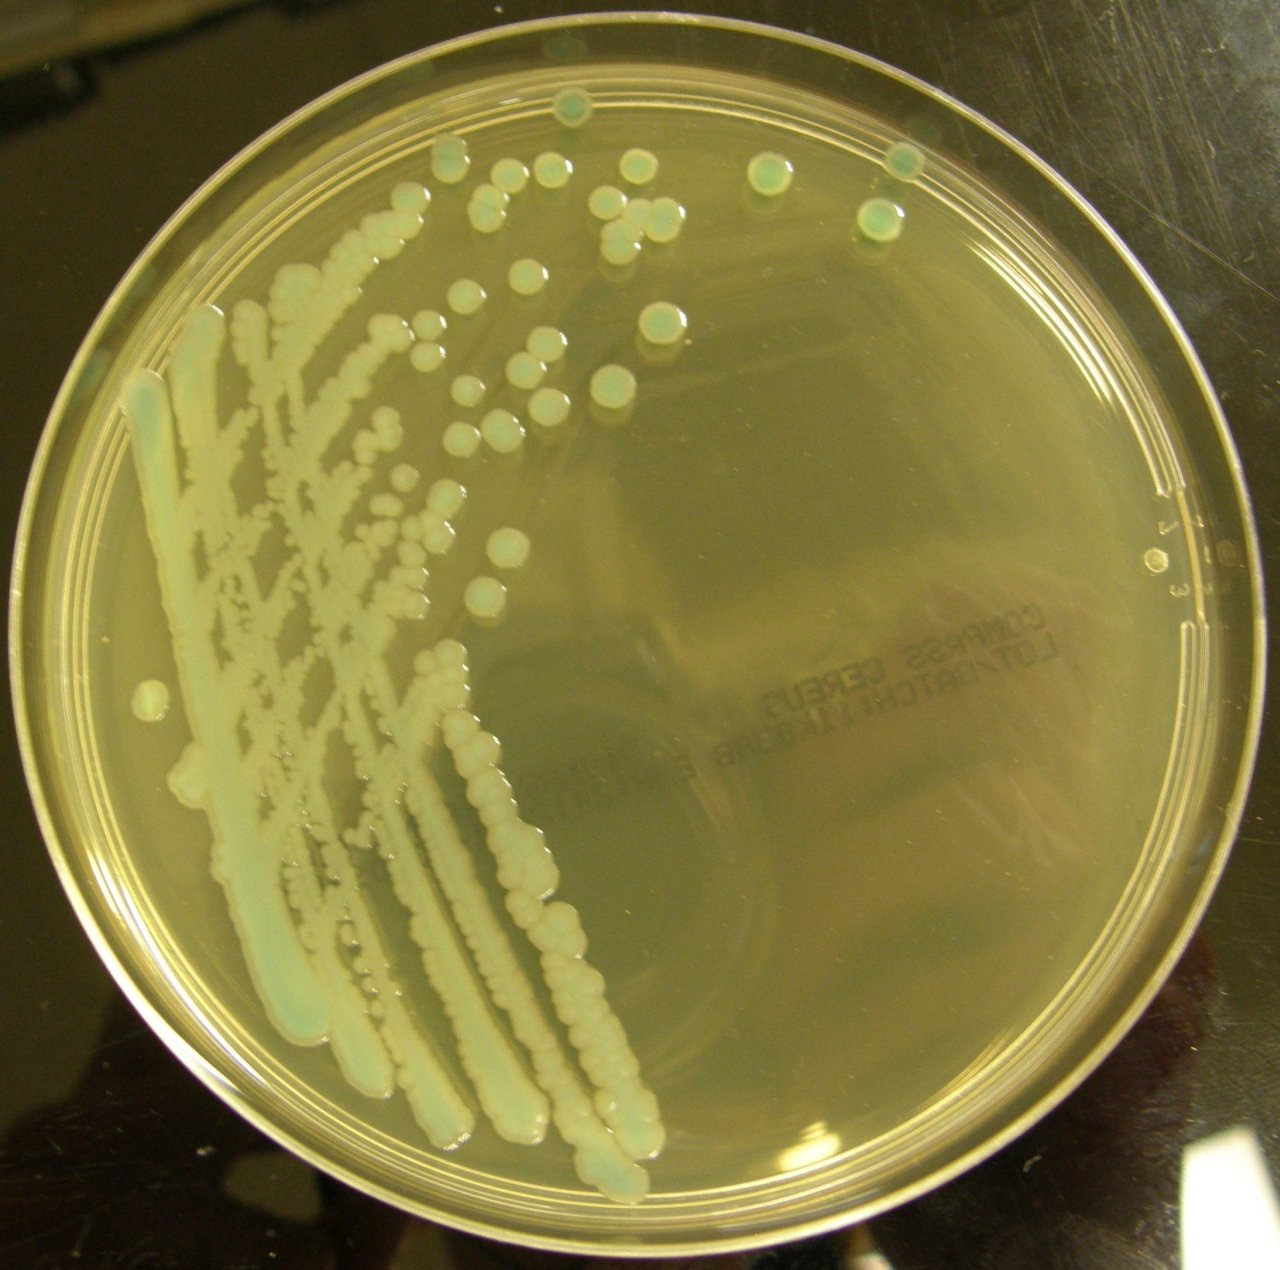 Микроорганизмы на плотных питательных средах